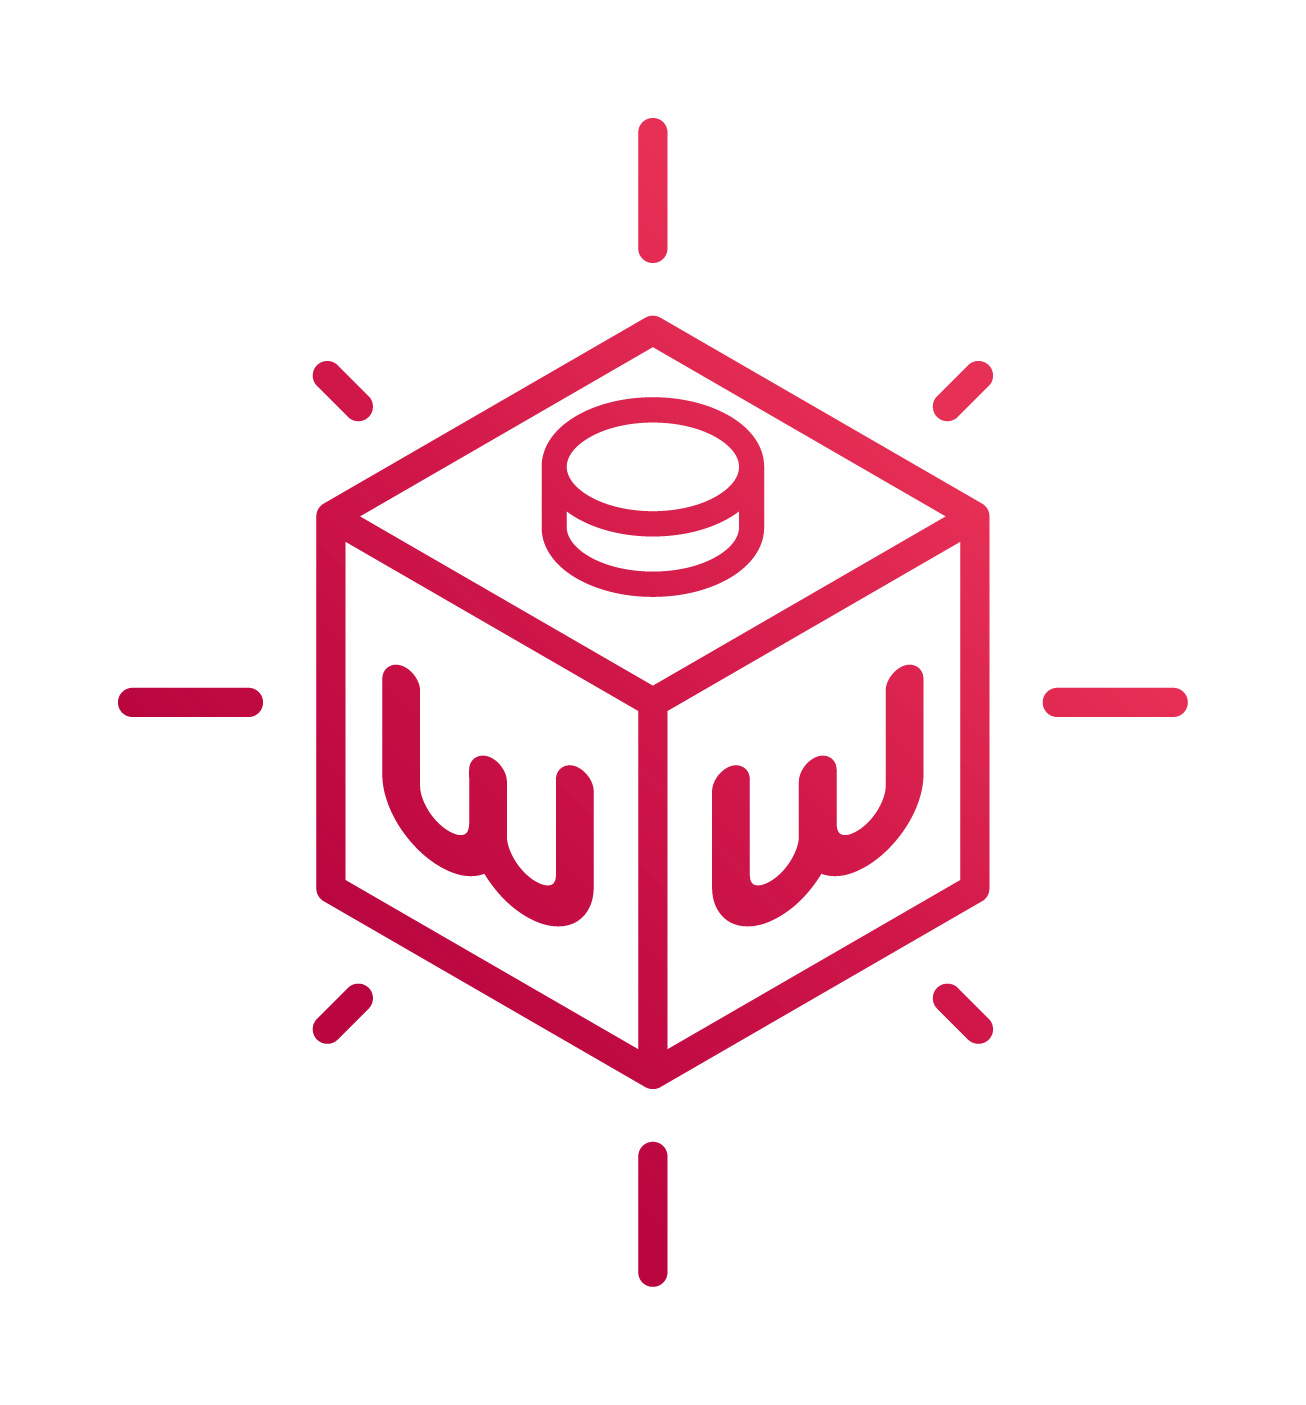 eWebinar logo software development